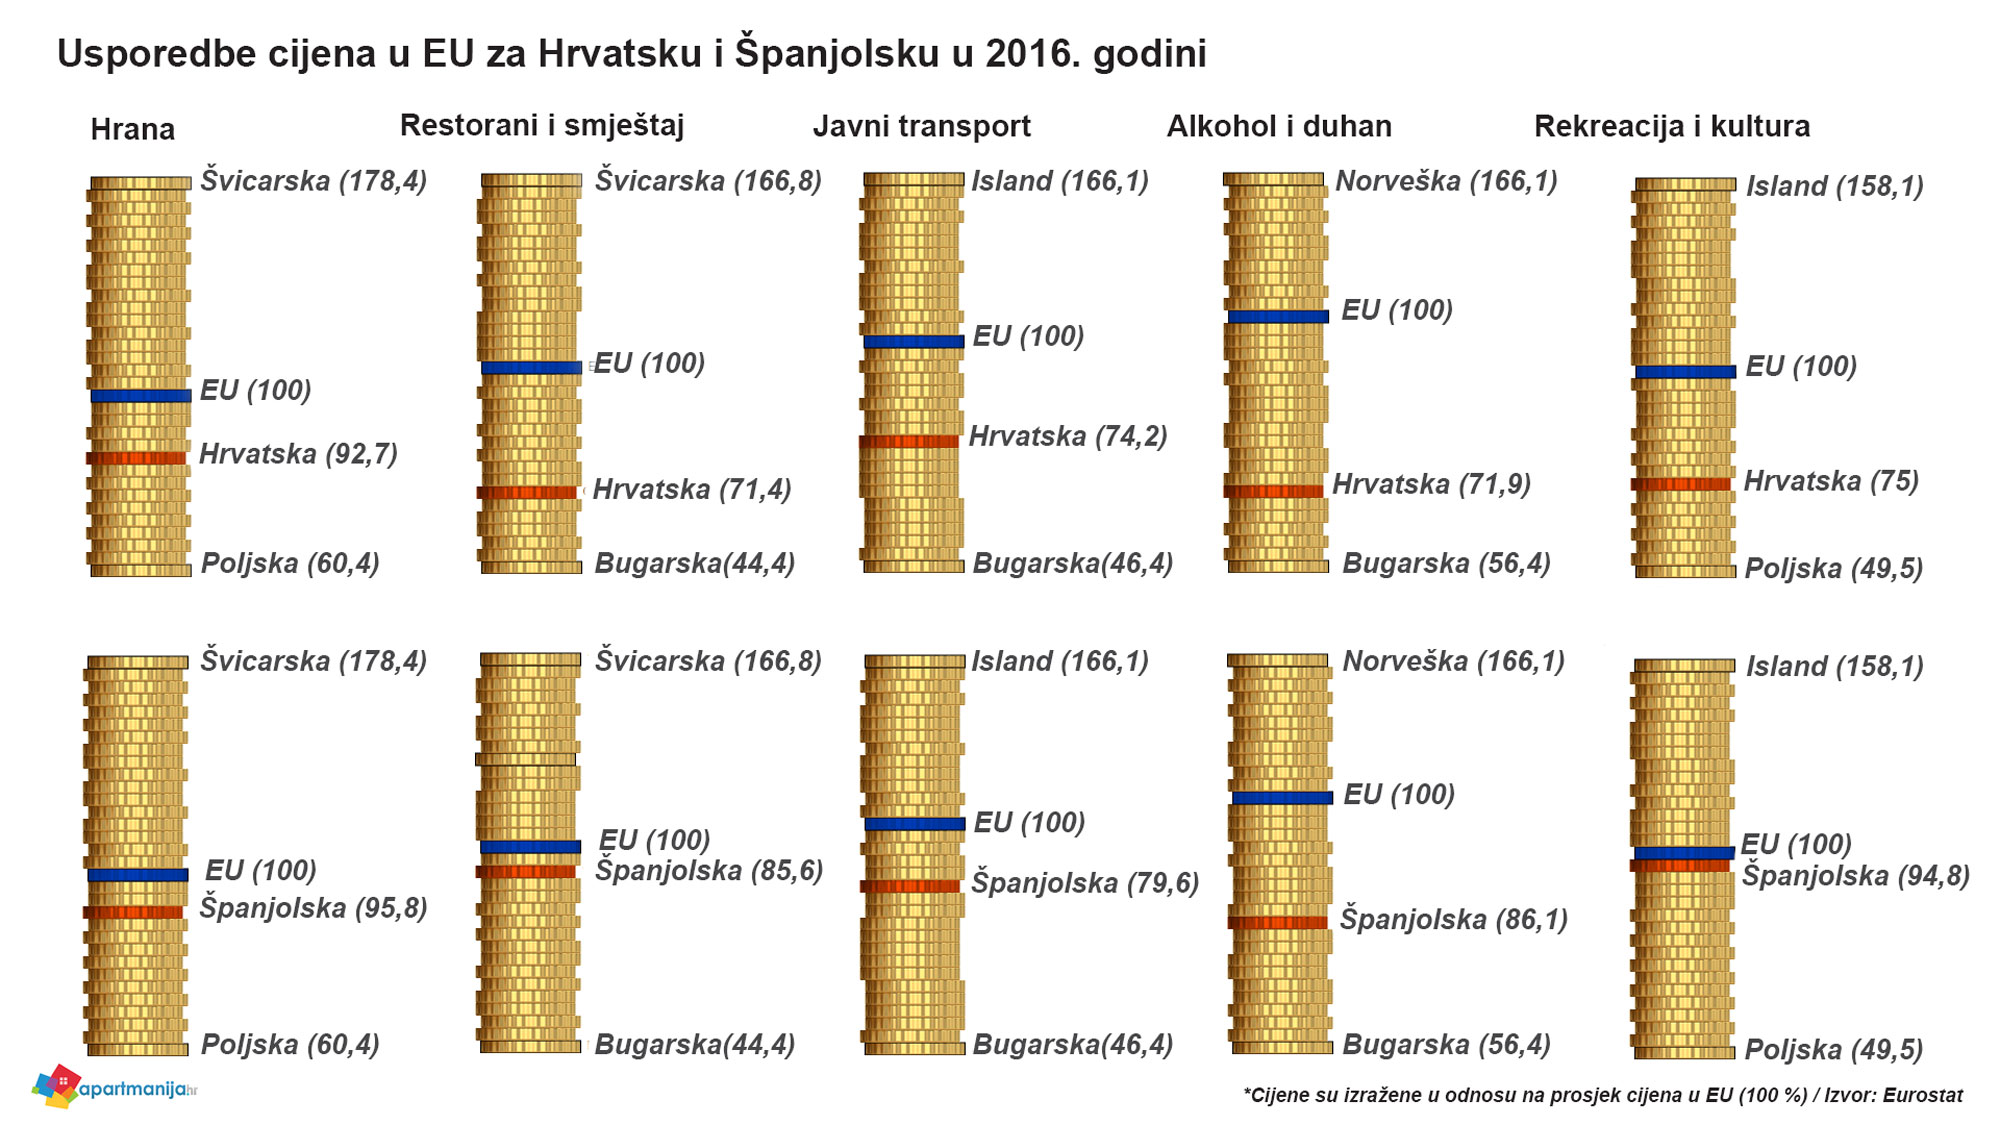 Usporedba cijena u EU - Hrvatska - Španjolska - 2016 godina